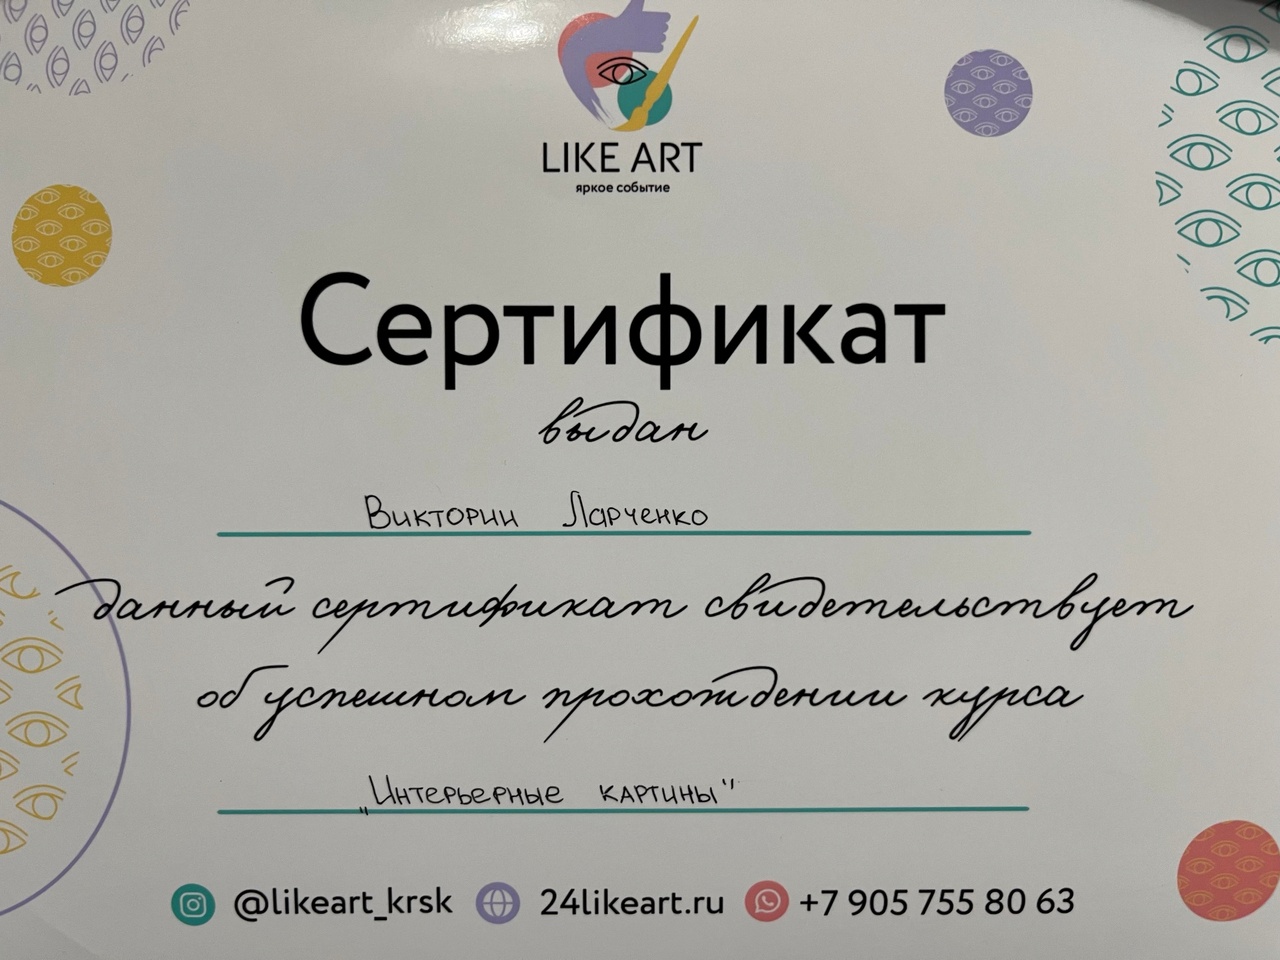 Ларченко В.А.сертификат